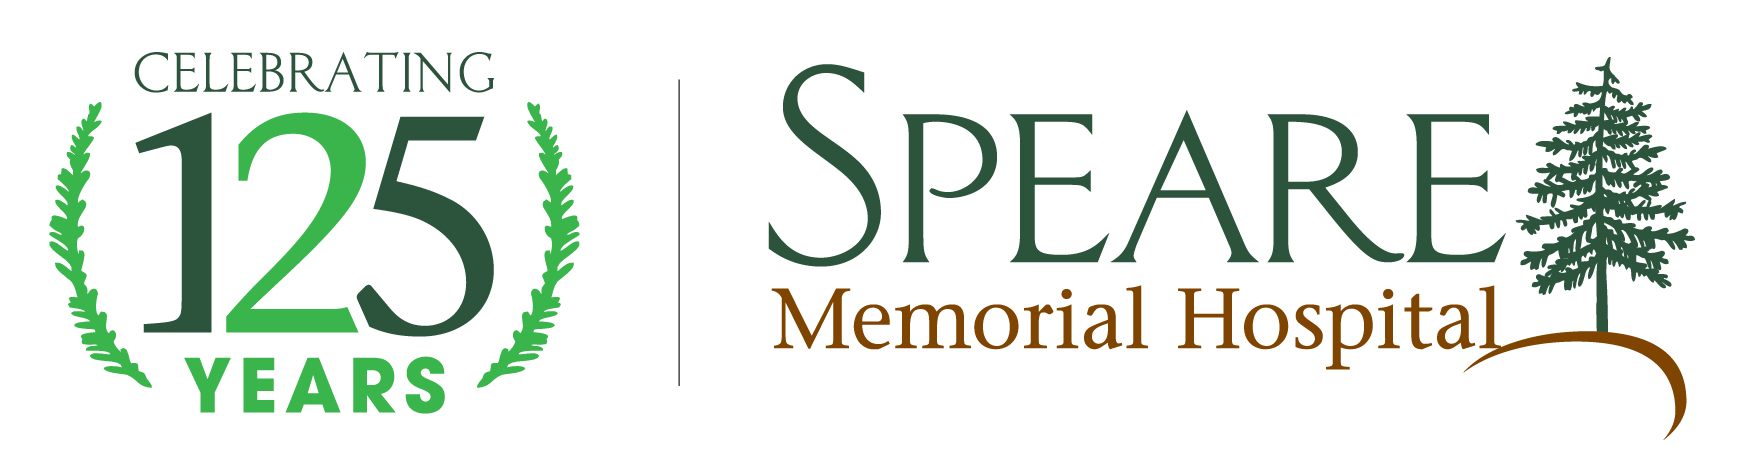 Speare Memorial Hospital Logo for 125 Celebration